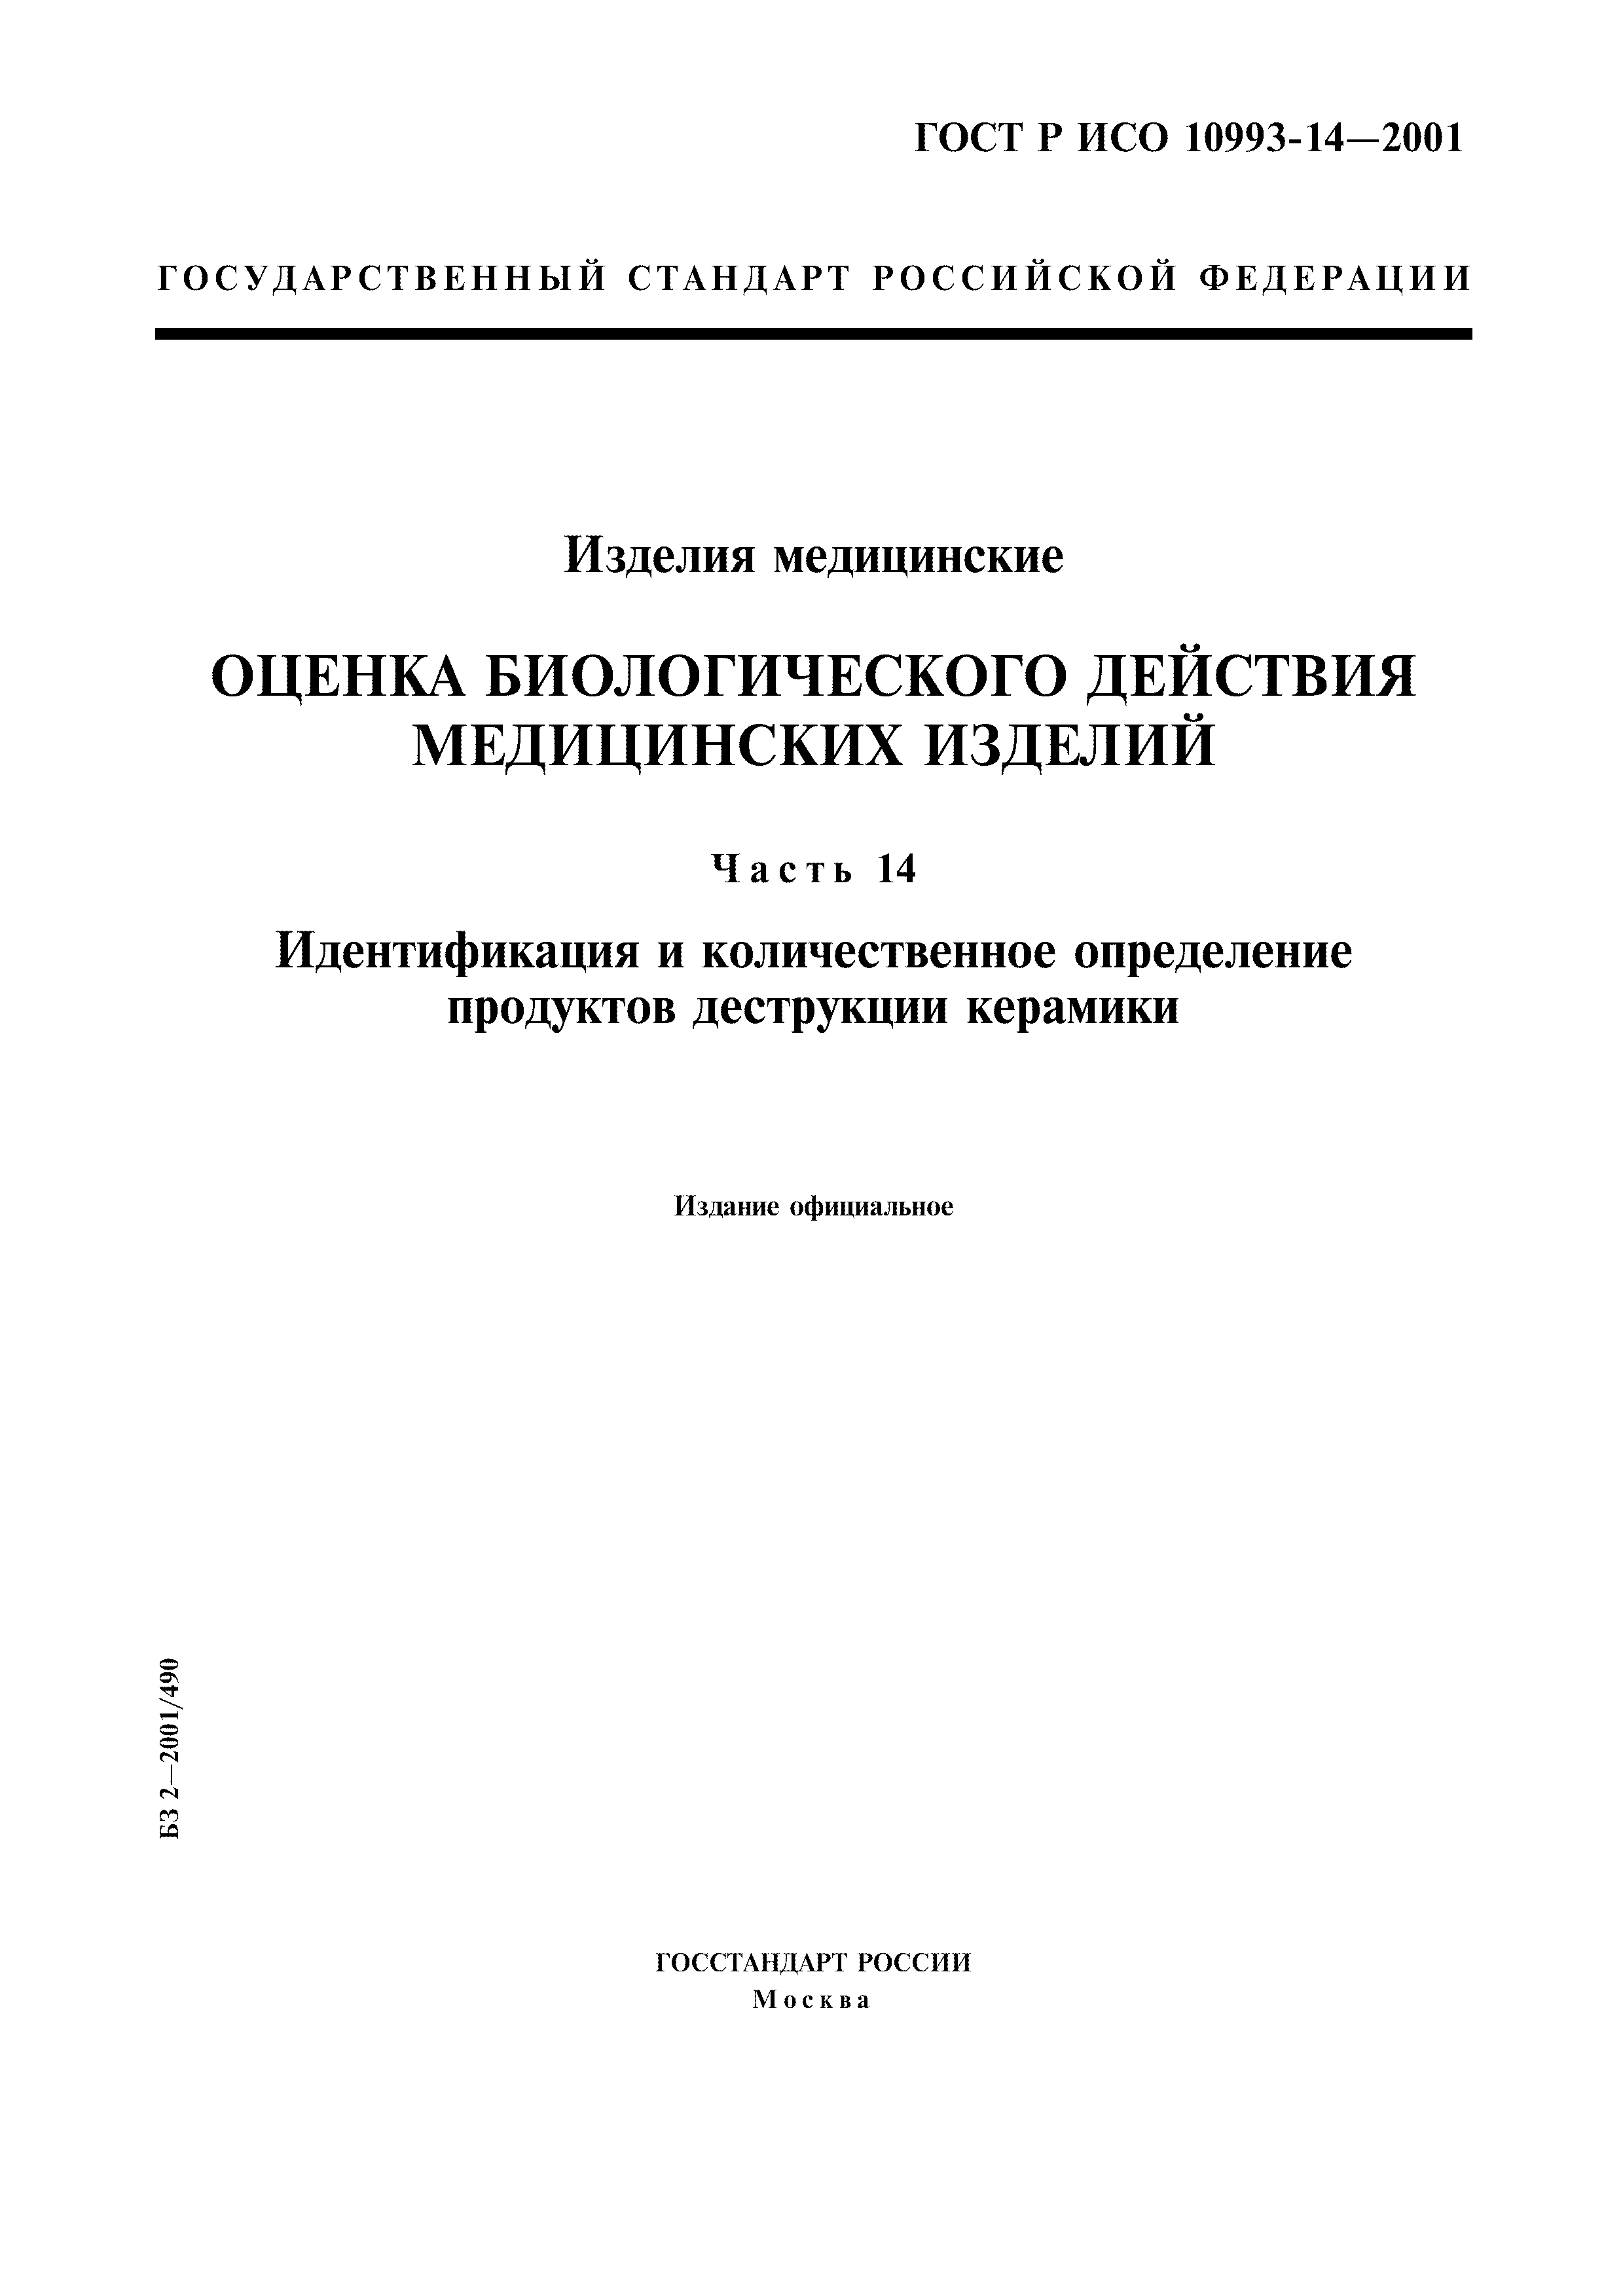 ГОСТ Р ИСО 10993-14-2001